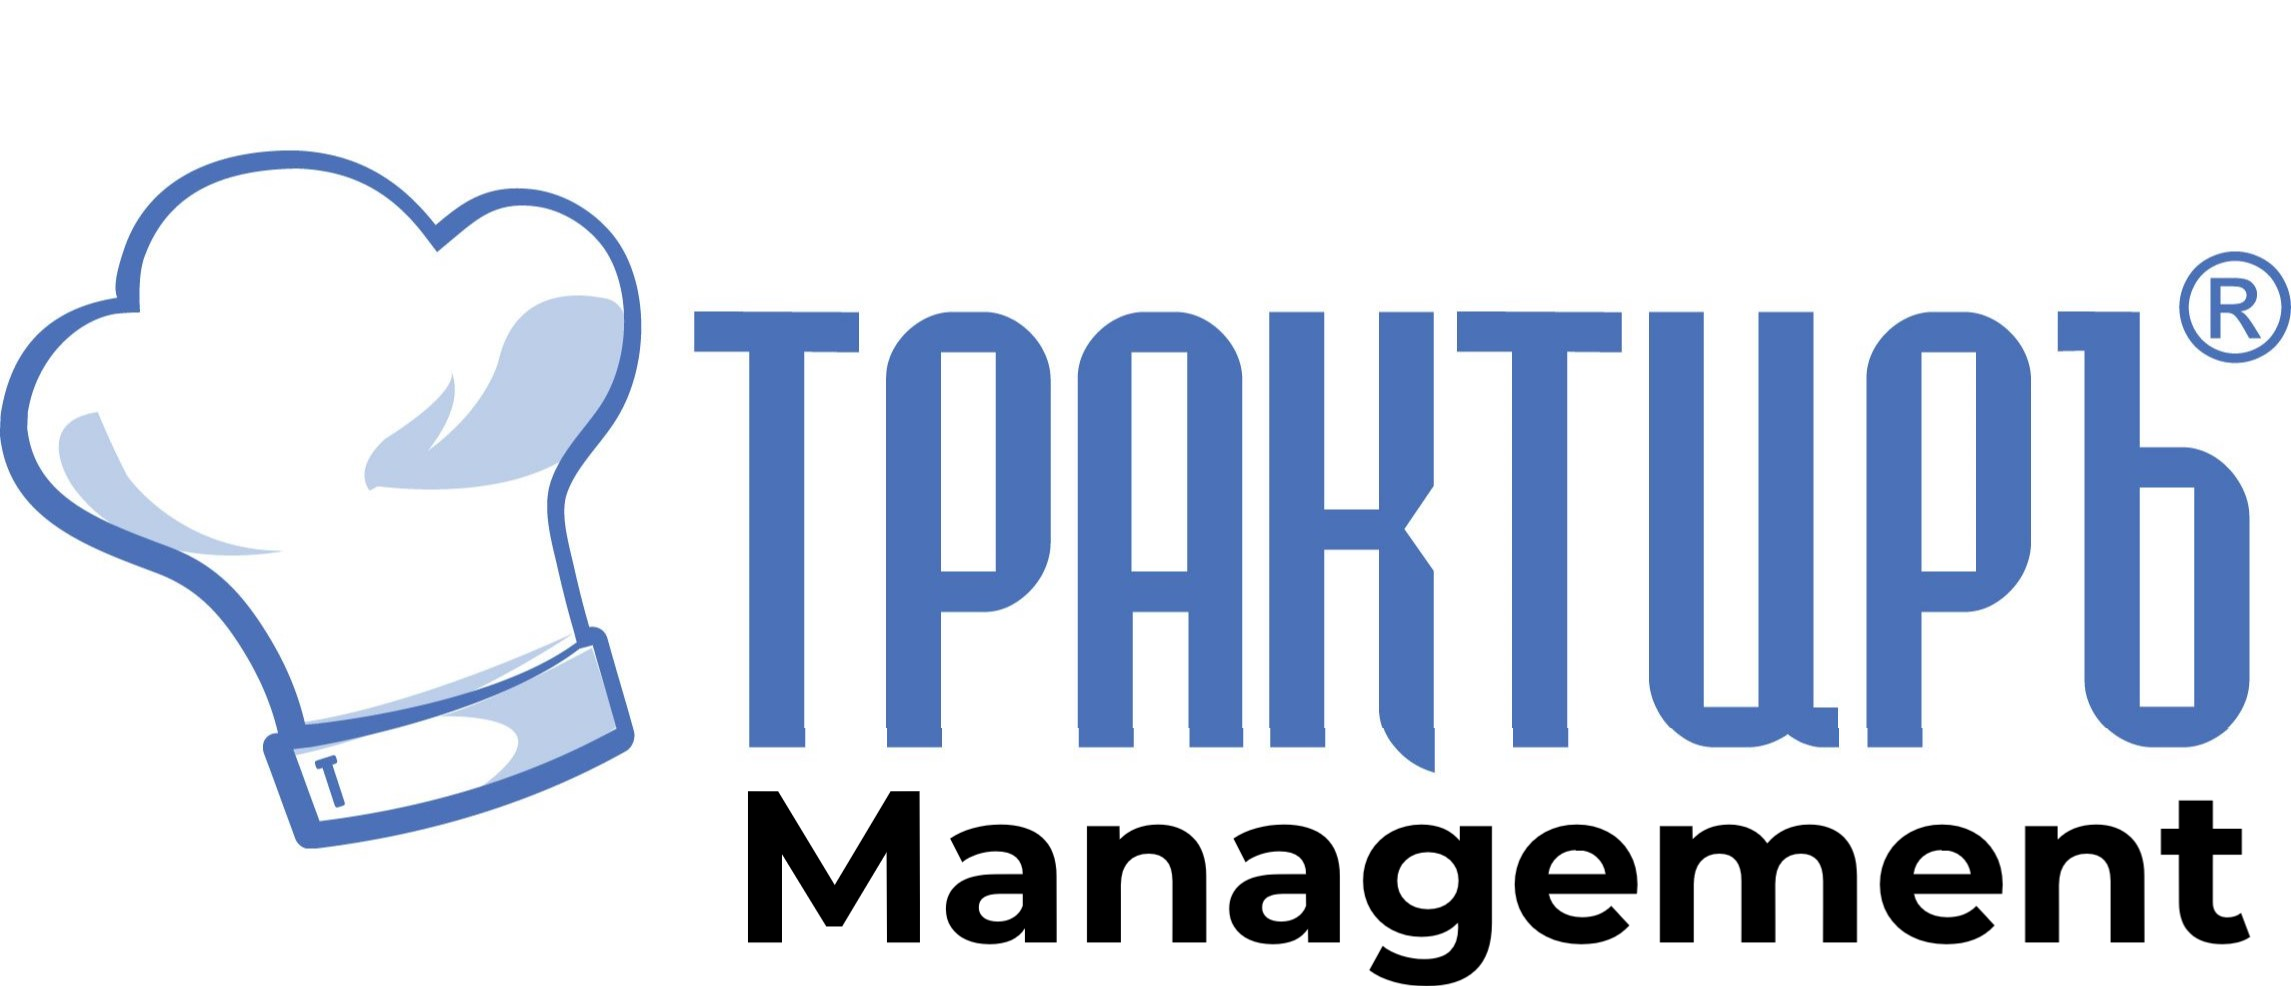 Трактиръ: Management в Грозном